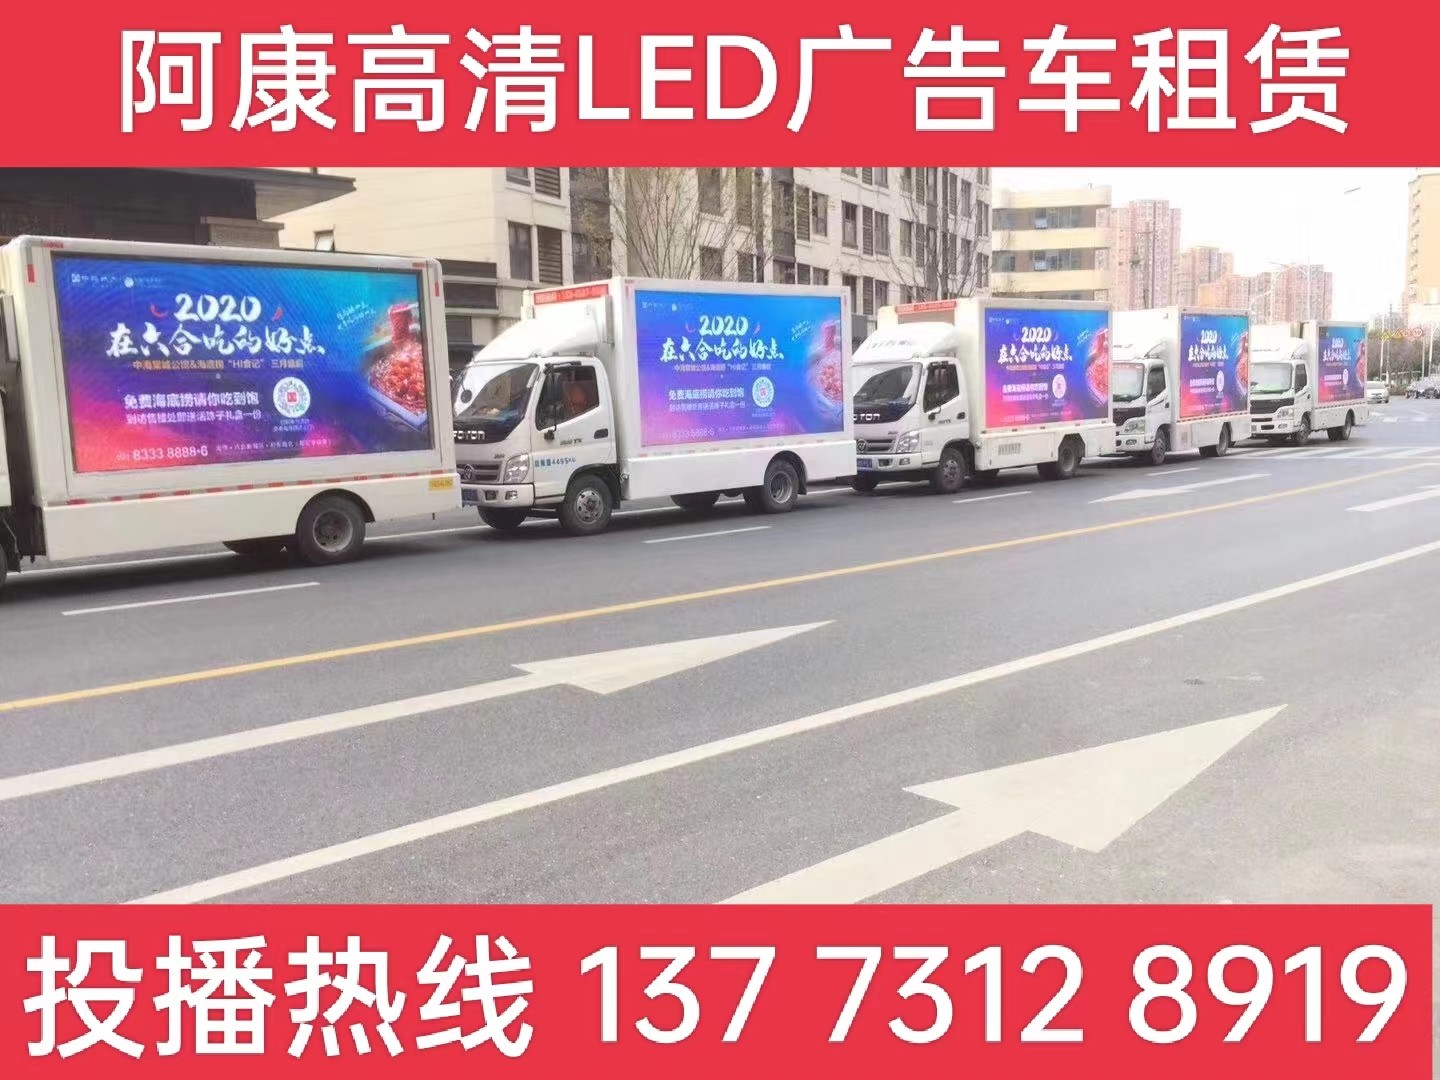 秦淮区宣传车出租-海底捞LED广告